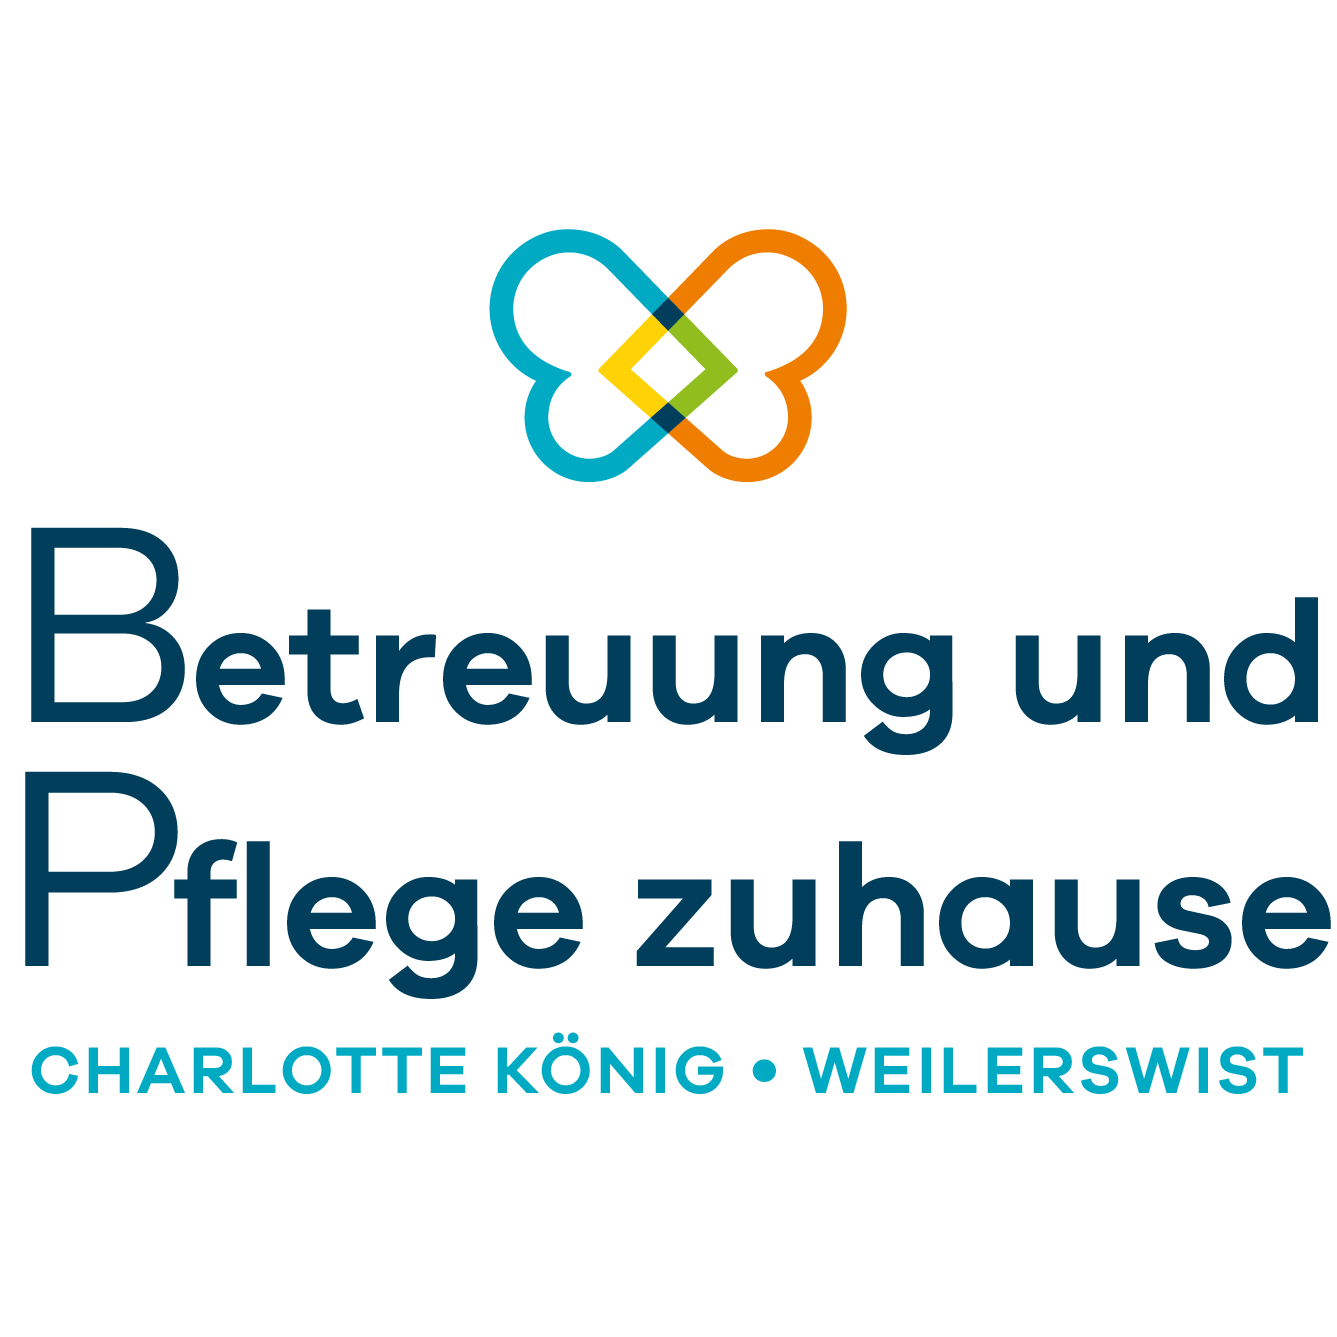 Betreuung und Pflege zuhause Charlotte König Weilerswist in Weilerswist - Logo